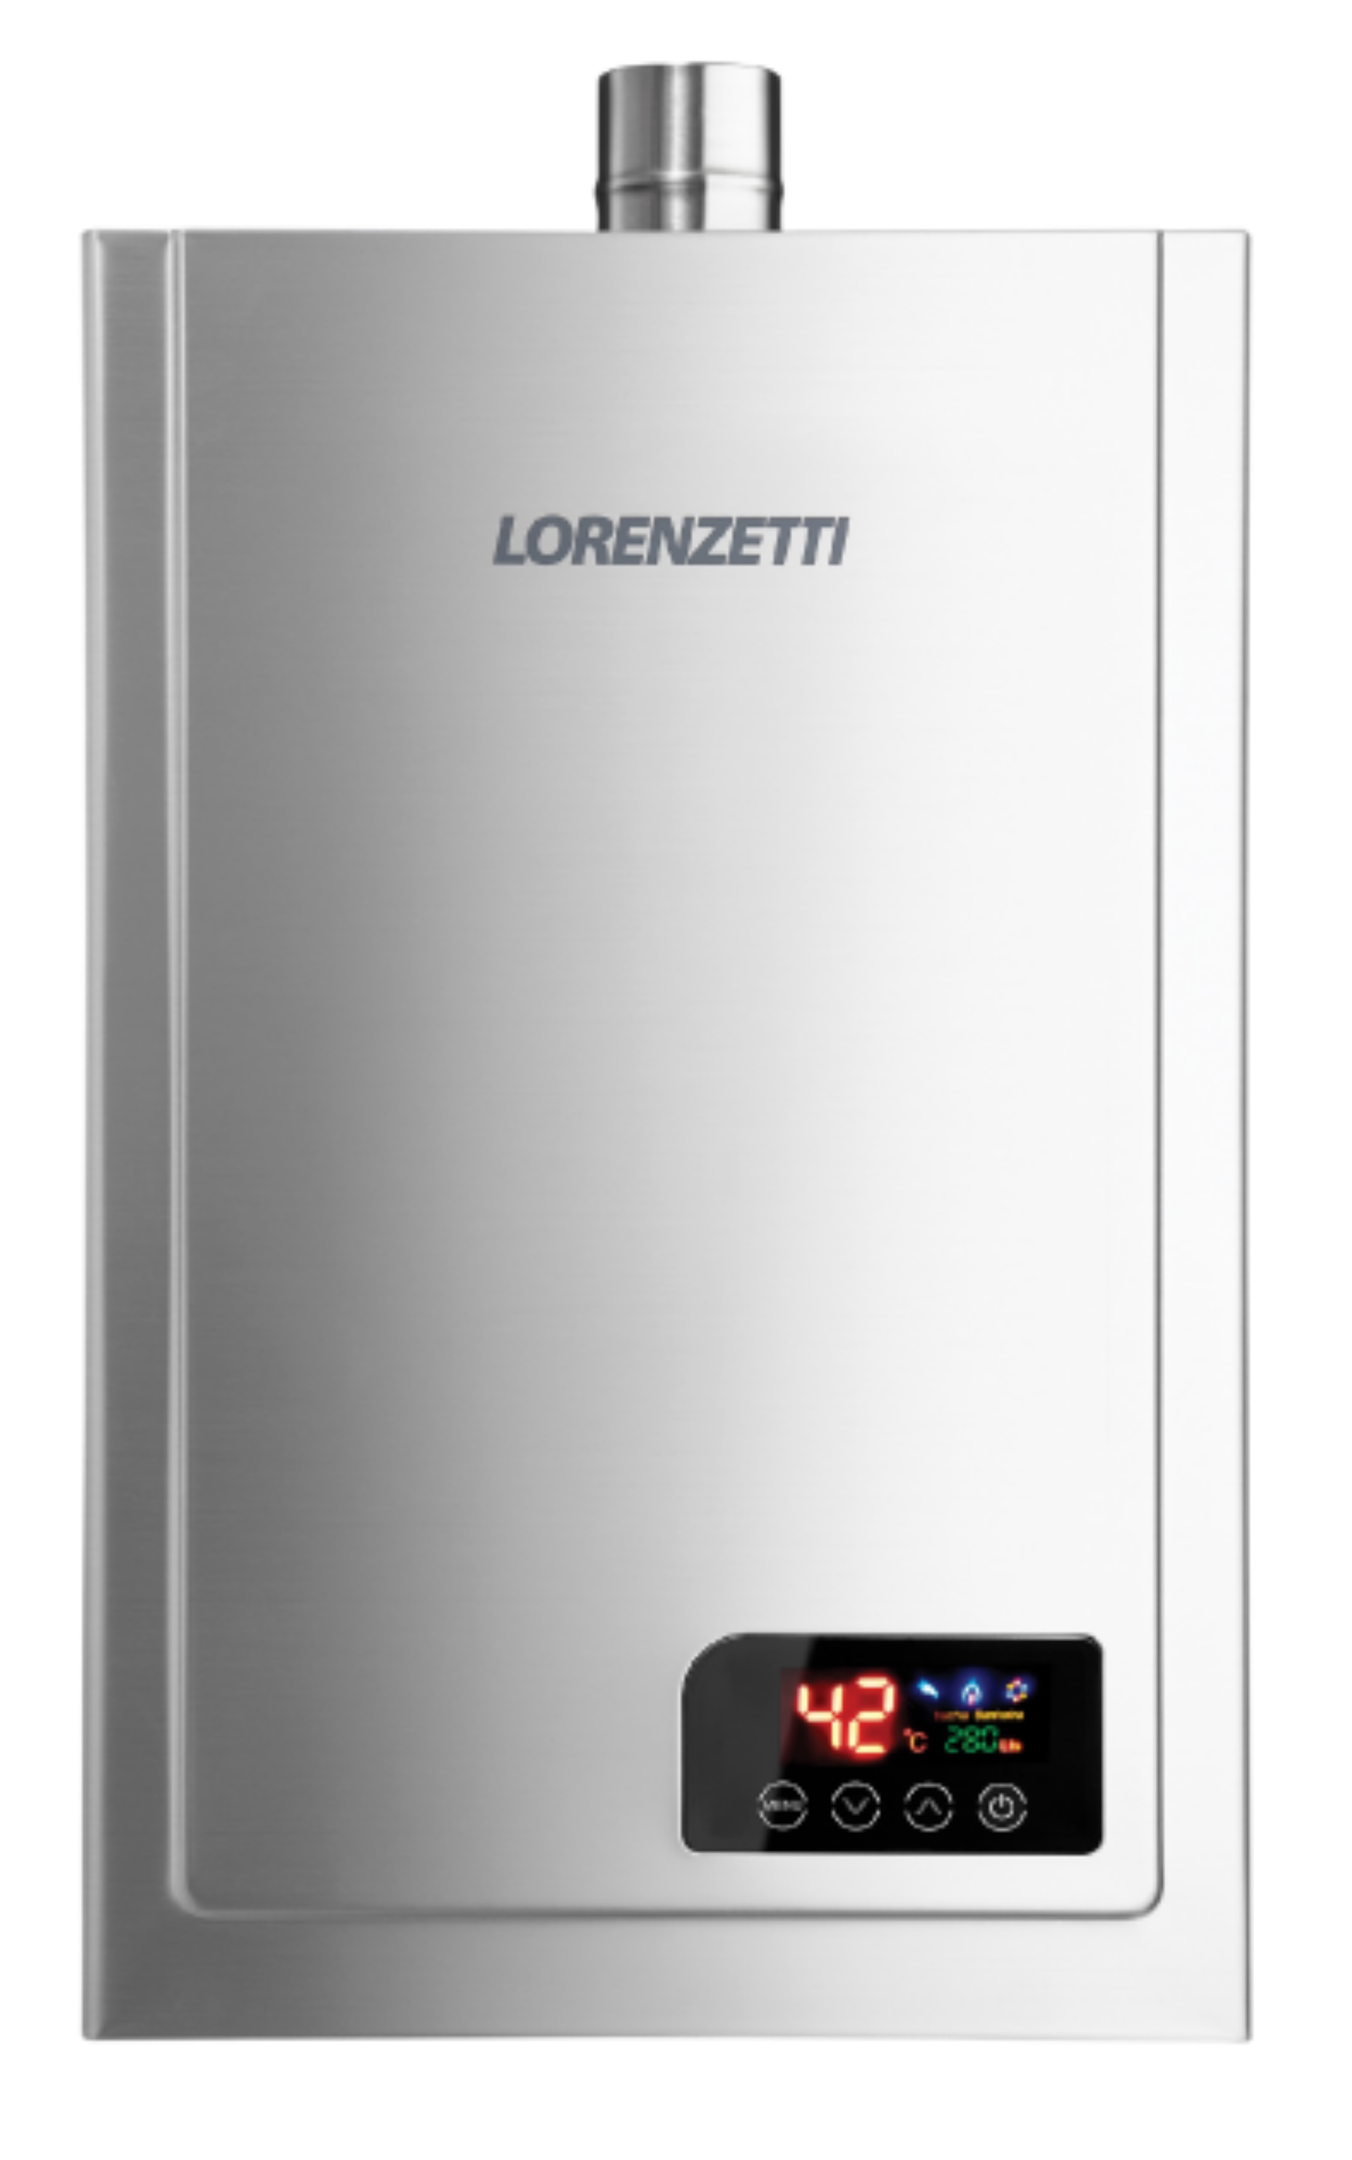 Aquecedor de Água a Gás Lz 2300de-i Digital Lorenzetti Glp (gás Liquefeito de Petróleo)